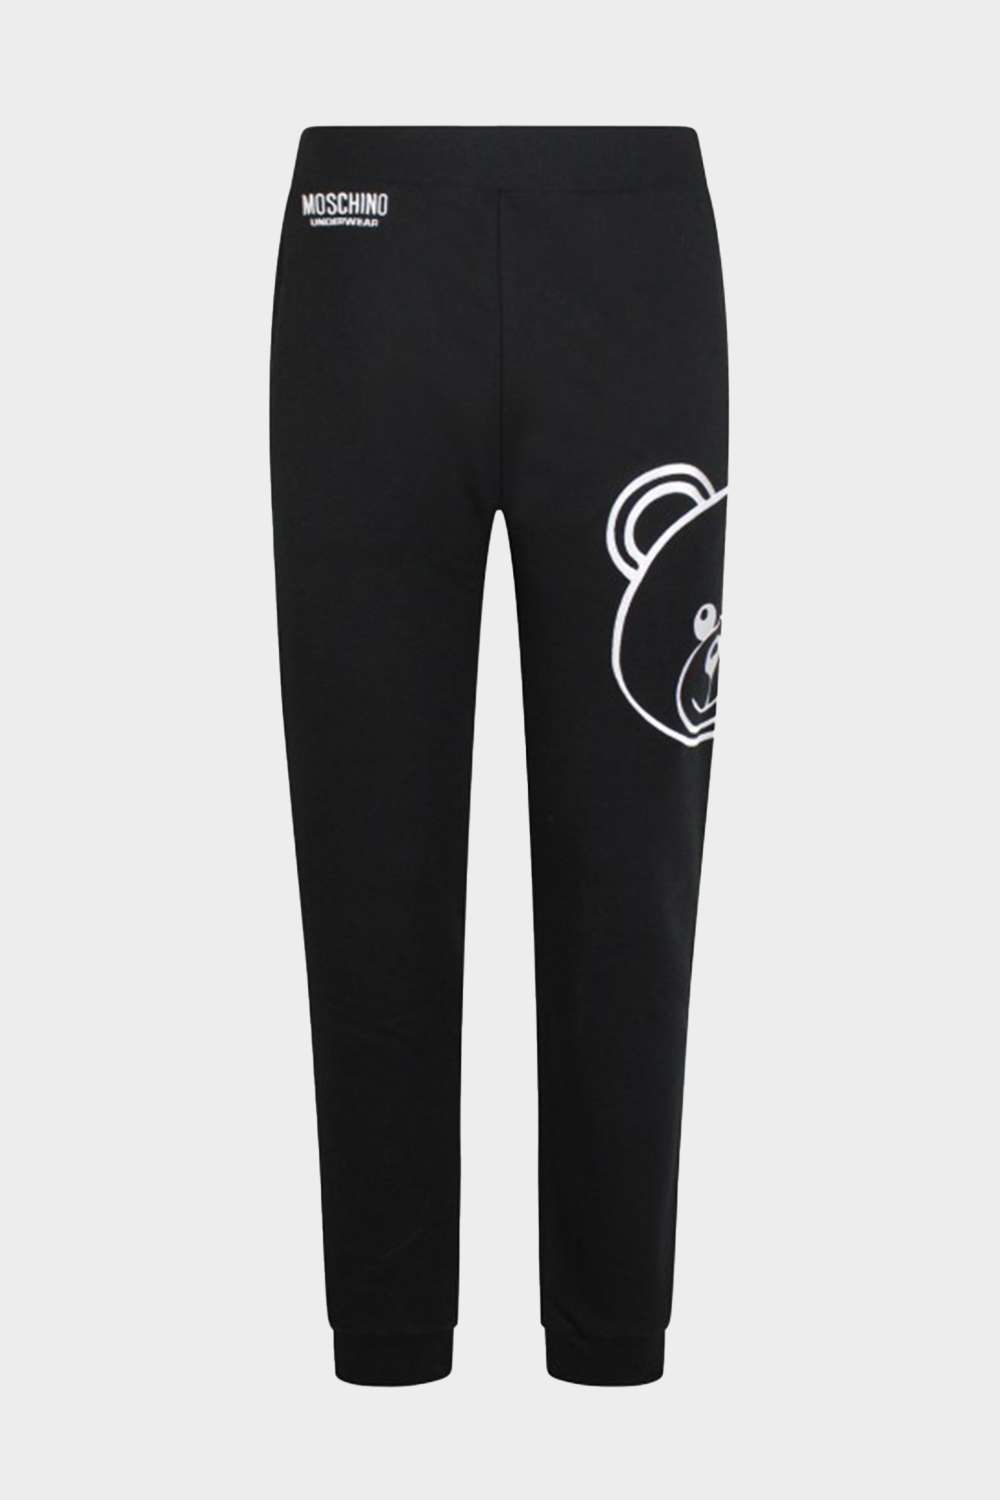 מכנסי טרנינג לנשים בצבע שחור MOSCHINO Vendome online | ונדום .